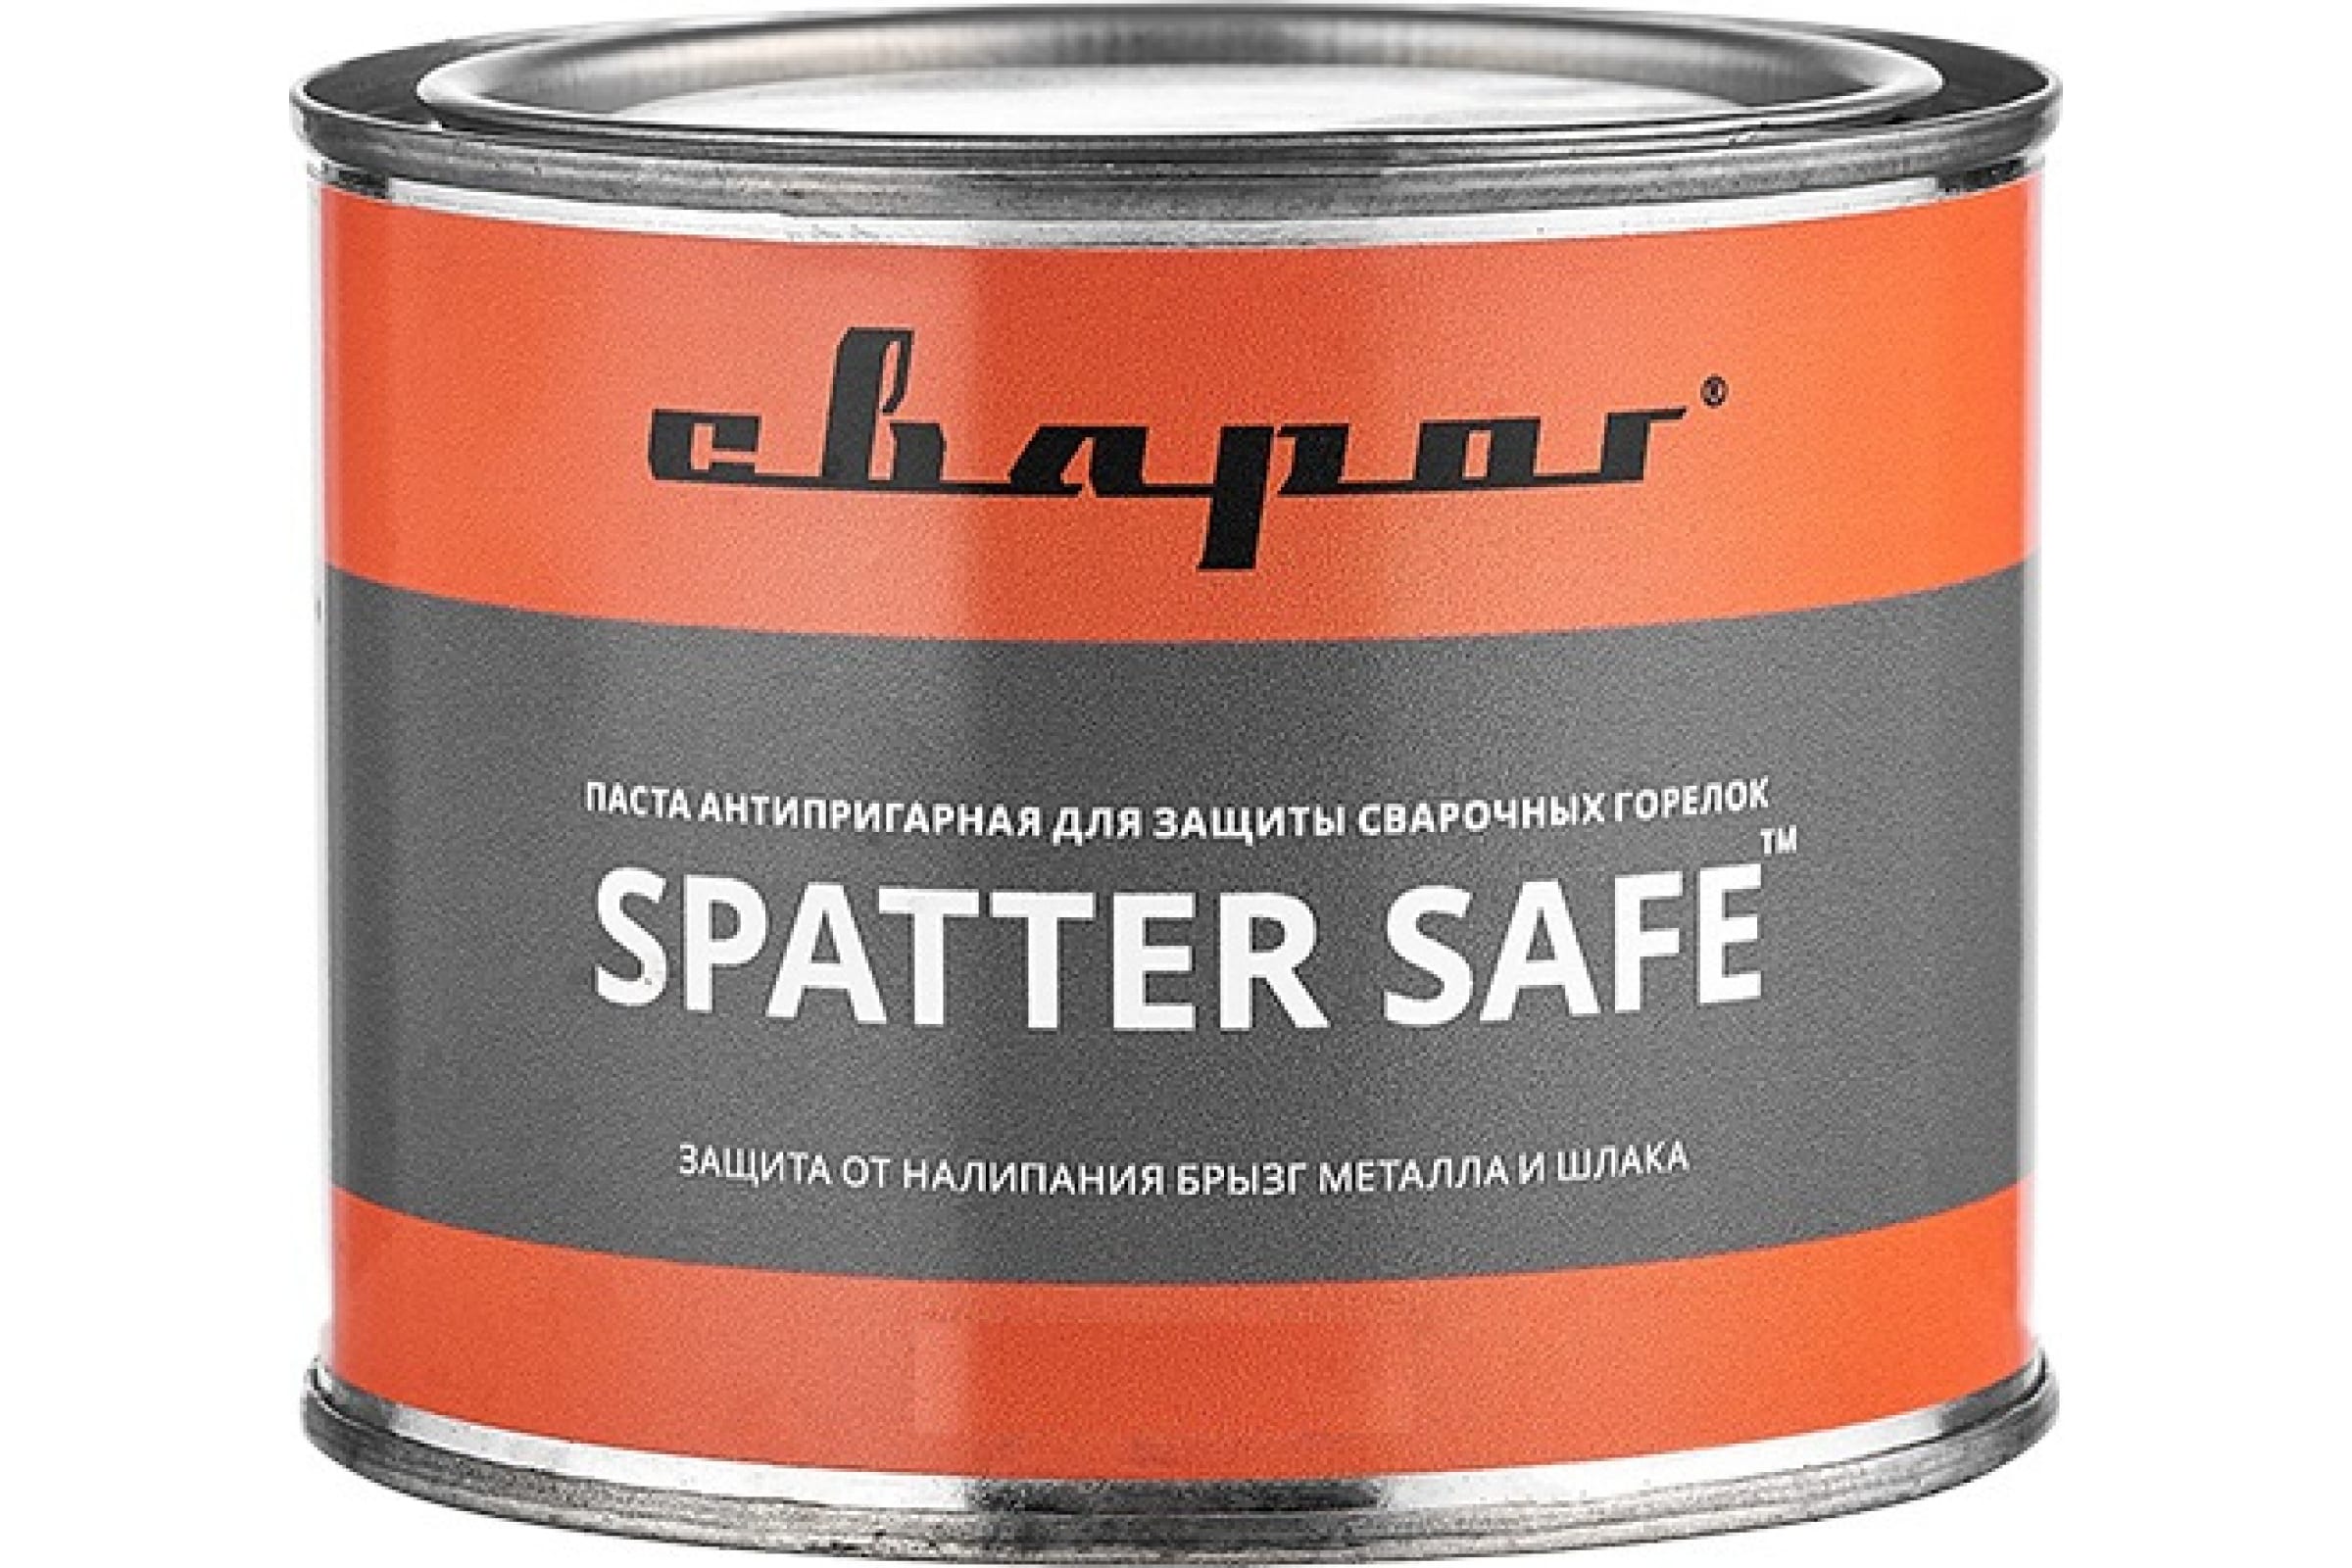 Сварог Паста антипригарная для защиты сварочных горелок Spatter Safe, 300 гр. ТМ 98941 антипригарная паста для защиты сварочных горелок себрохим